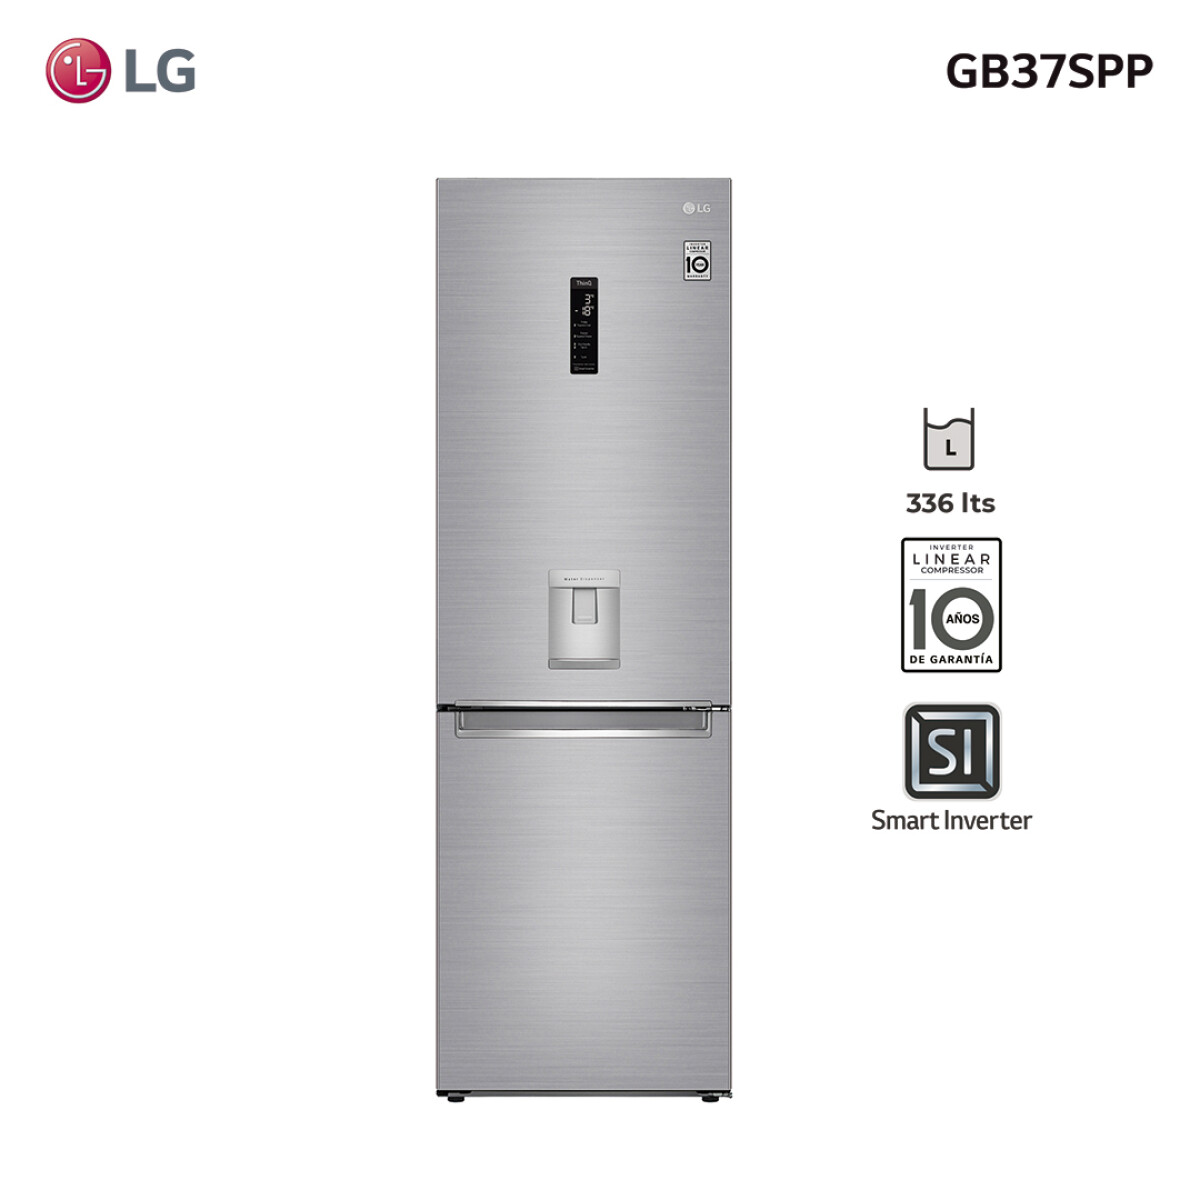 Refrigerador inverter 336L GB37SPP LG 